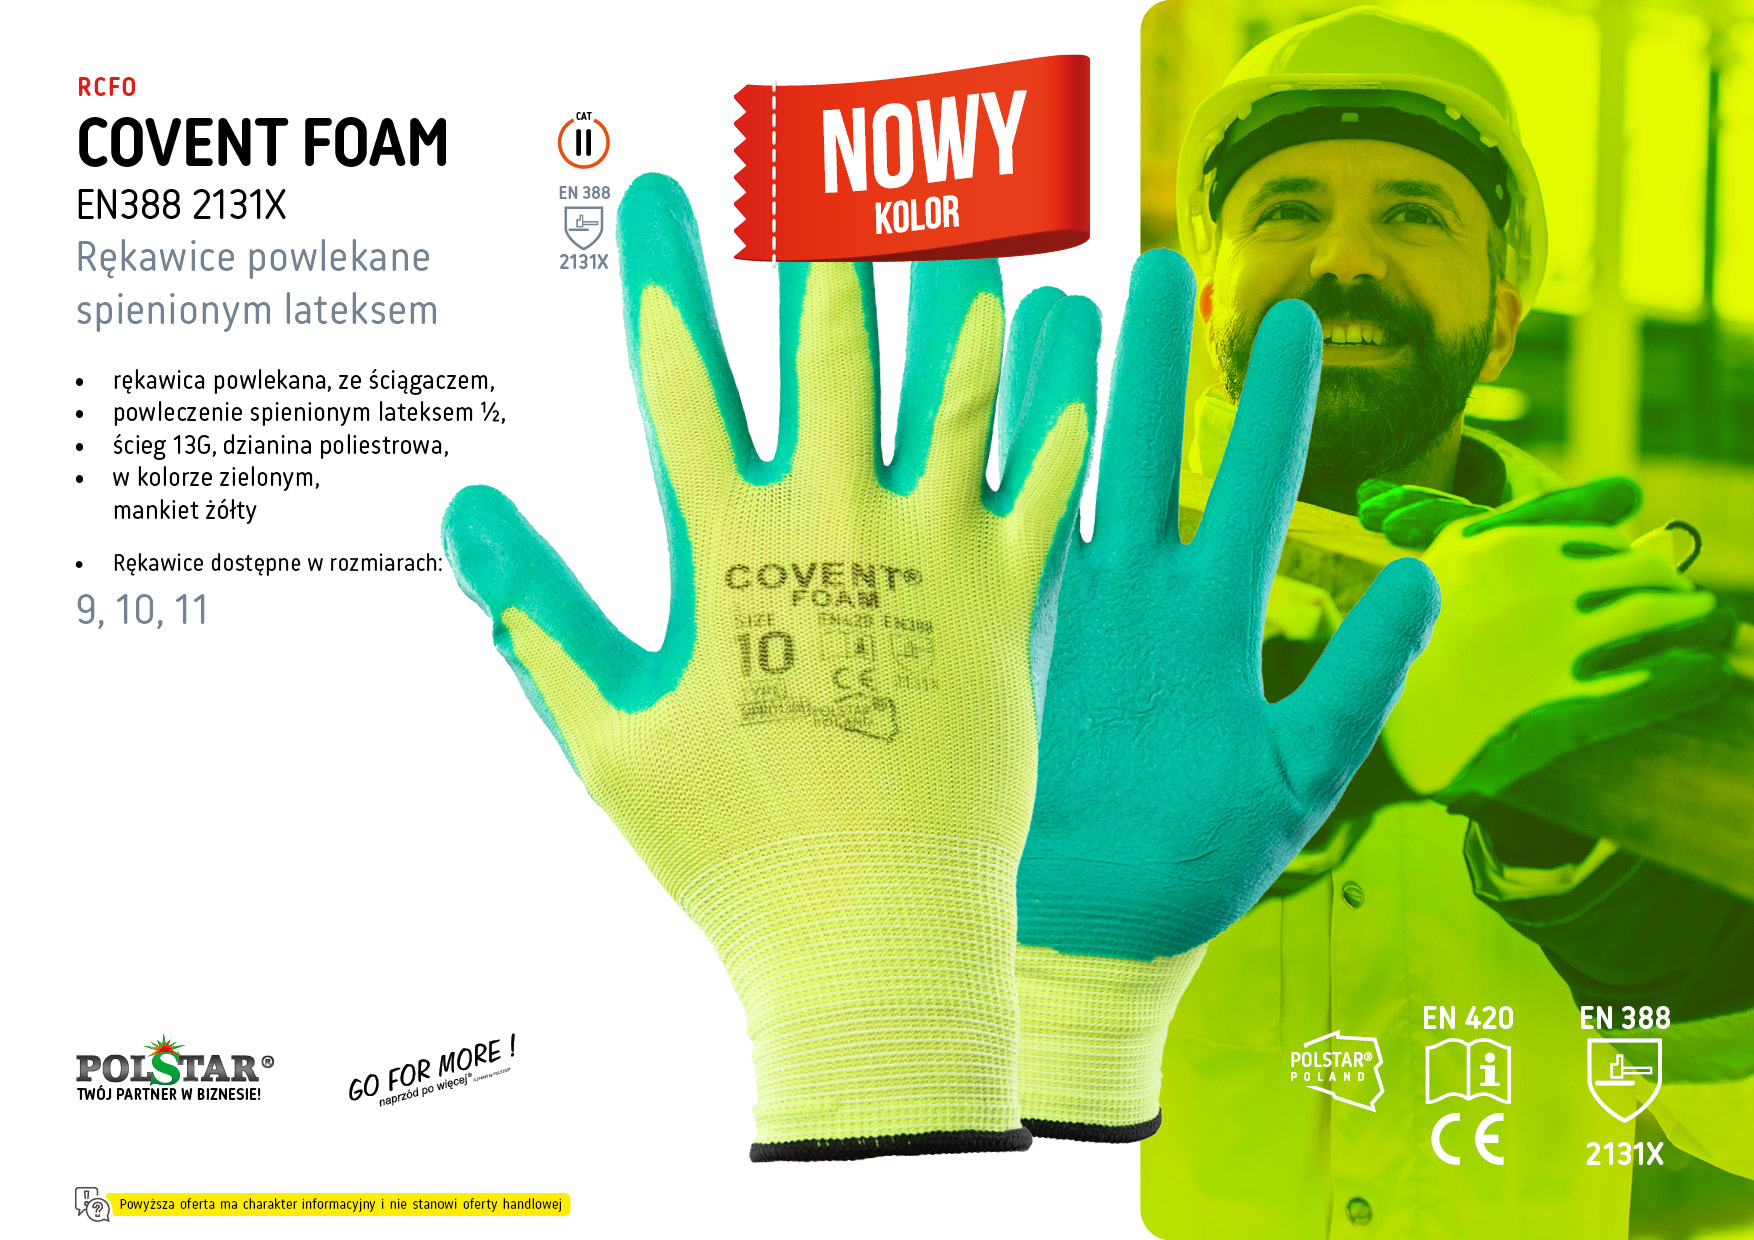 Covent Foam - Nowy Kolor!